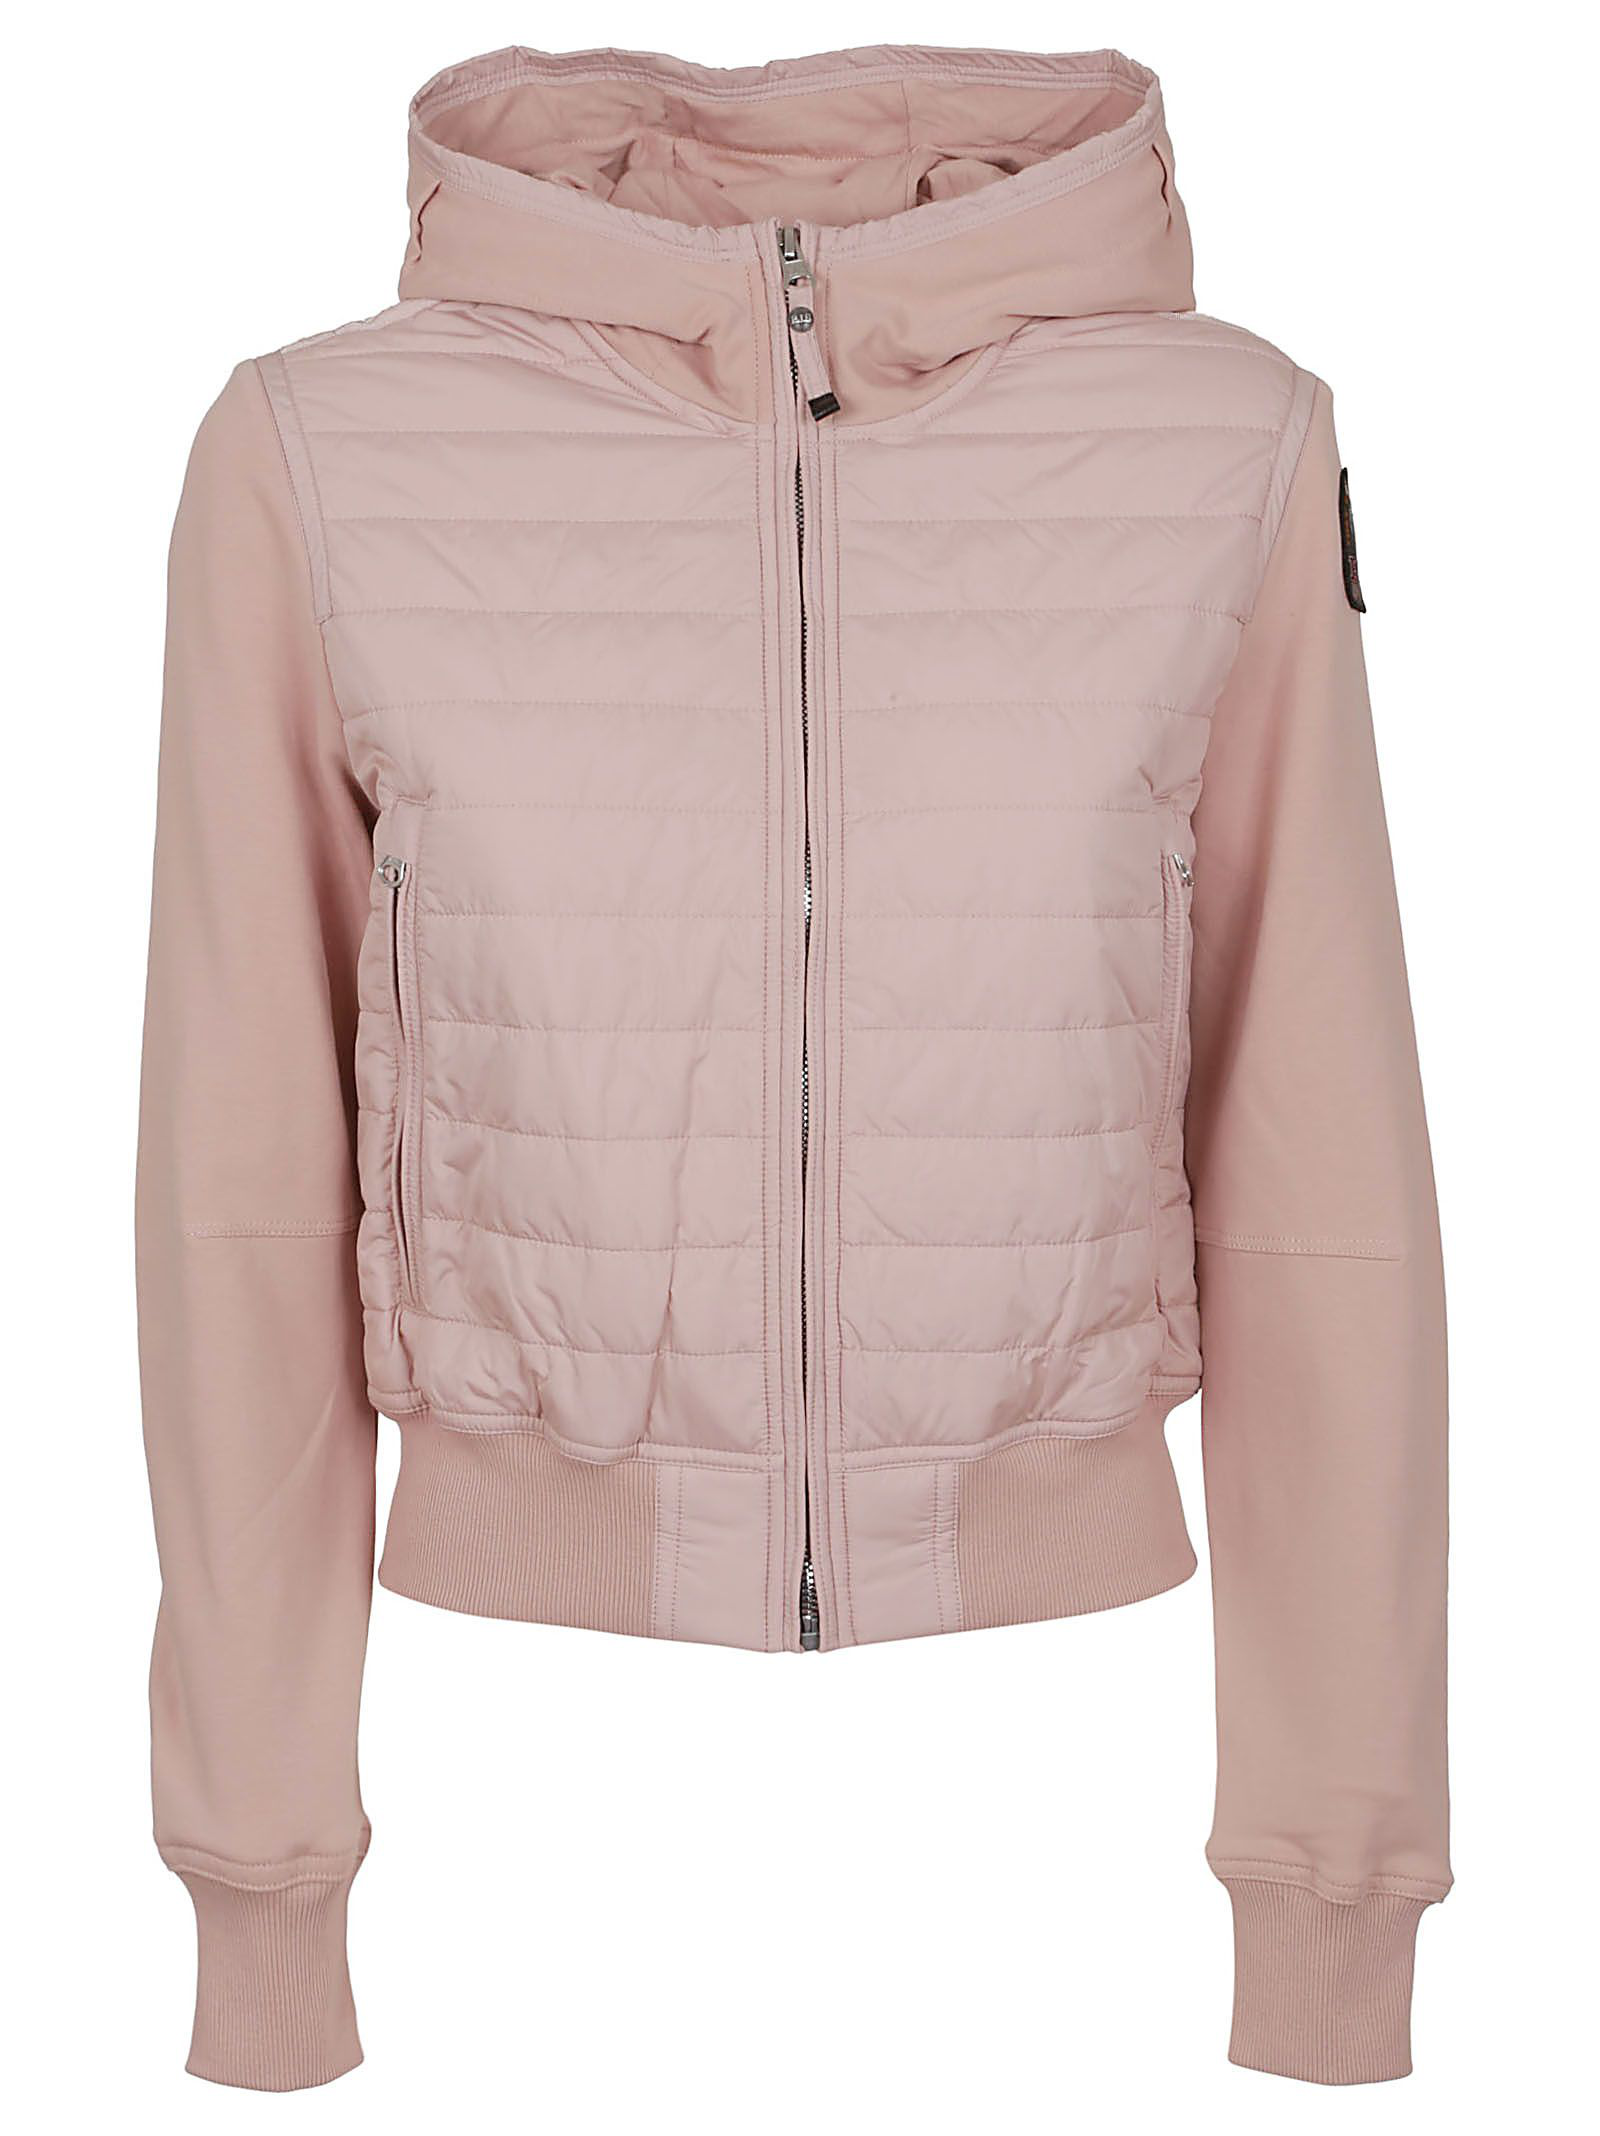 pink parajumper jacket